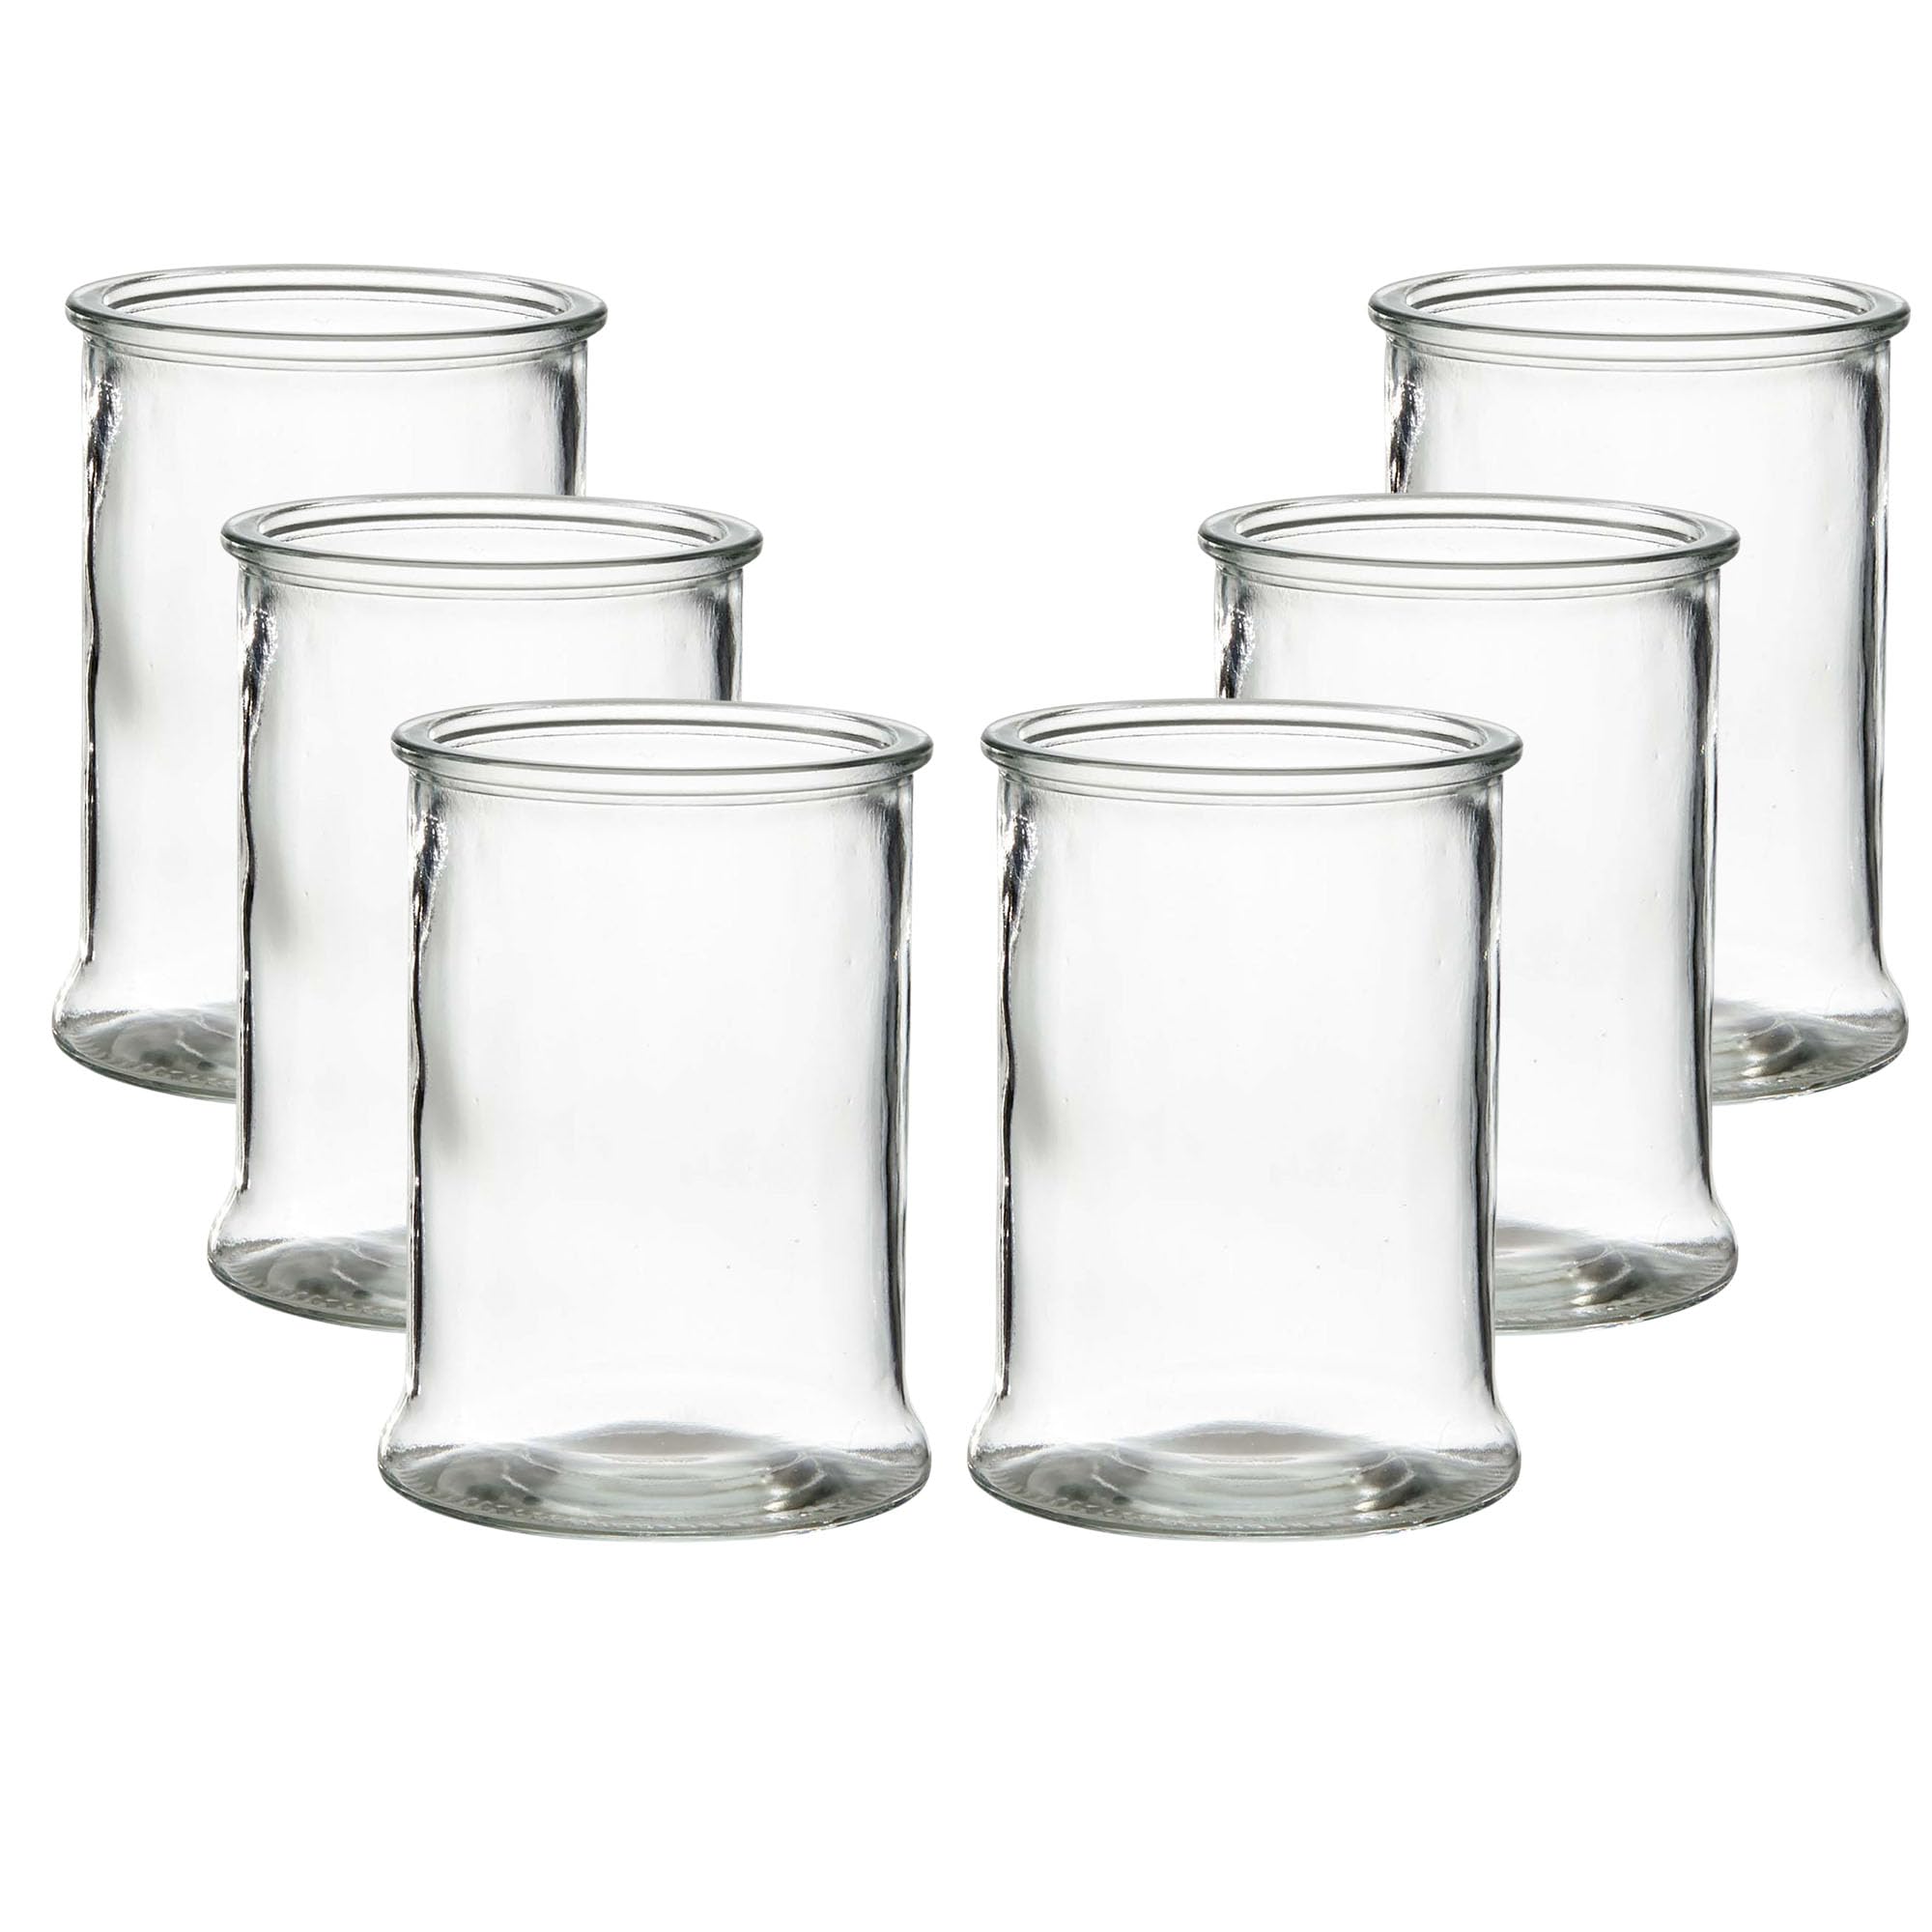 6 x Windlicht aus Glas in Zylinderform - H 17 cm - Ø 13 cm - Glas Windlicht - Blumenvase - Tischvase - Pflanzglas - Garten im Glas - Vase